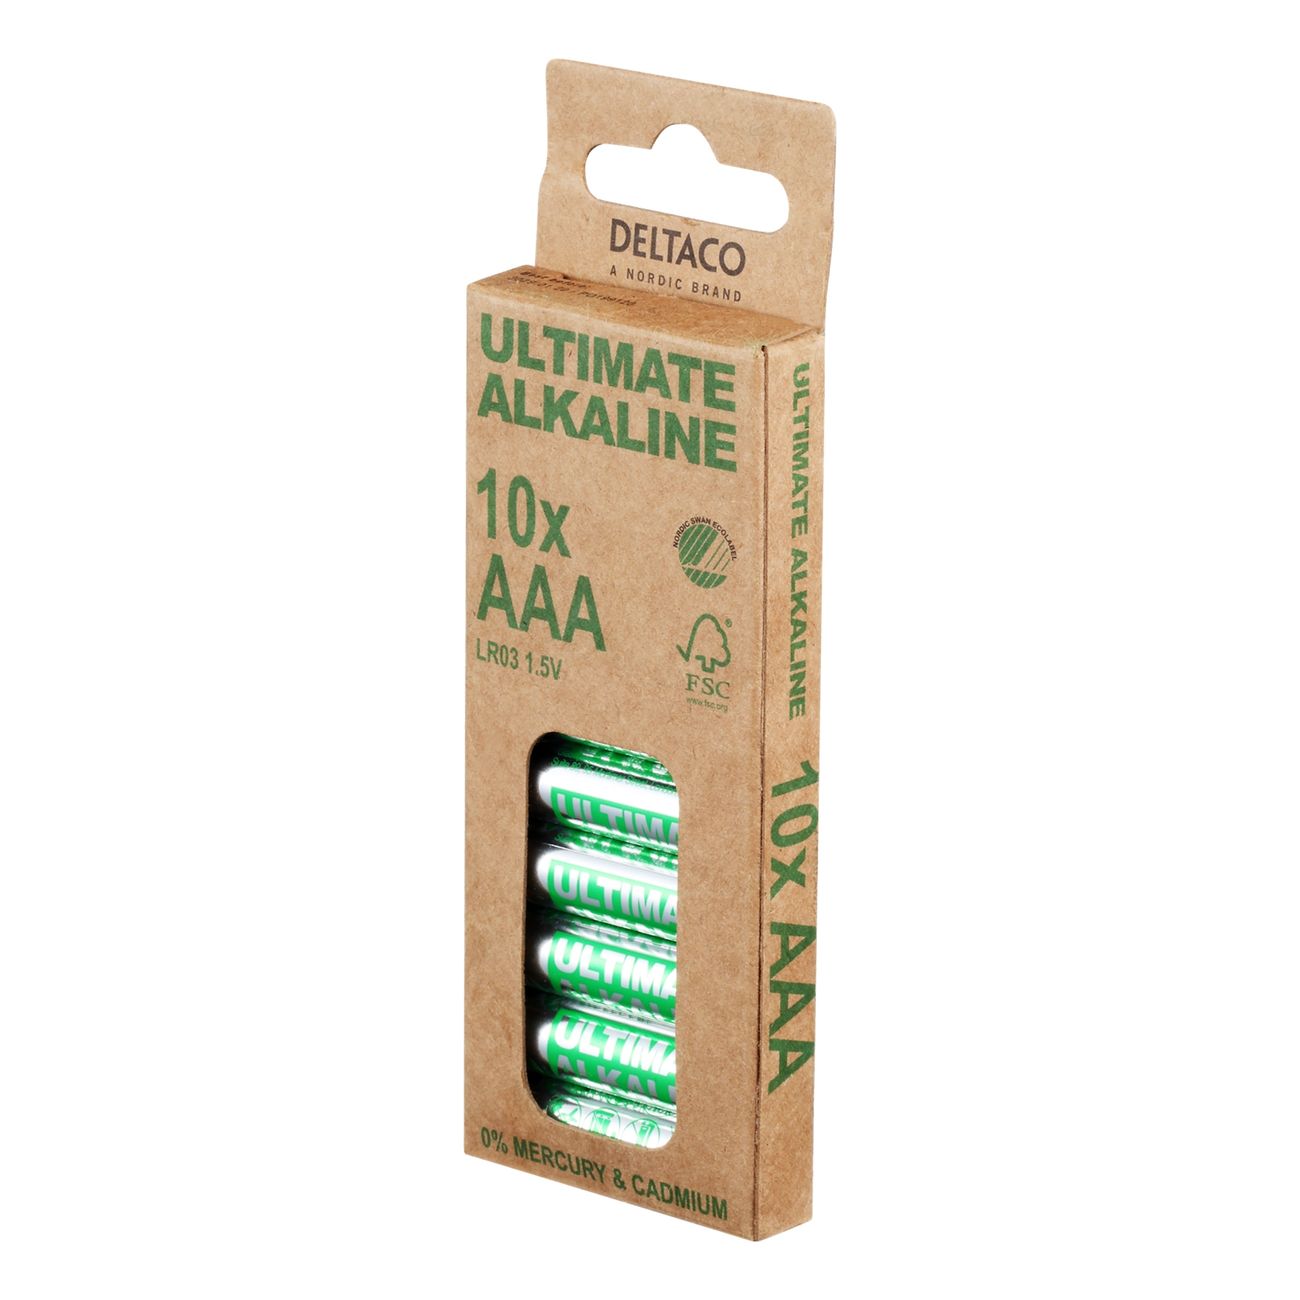 deltaco-ultimate-alkaline-batterier-91181-5